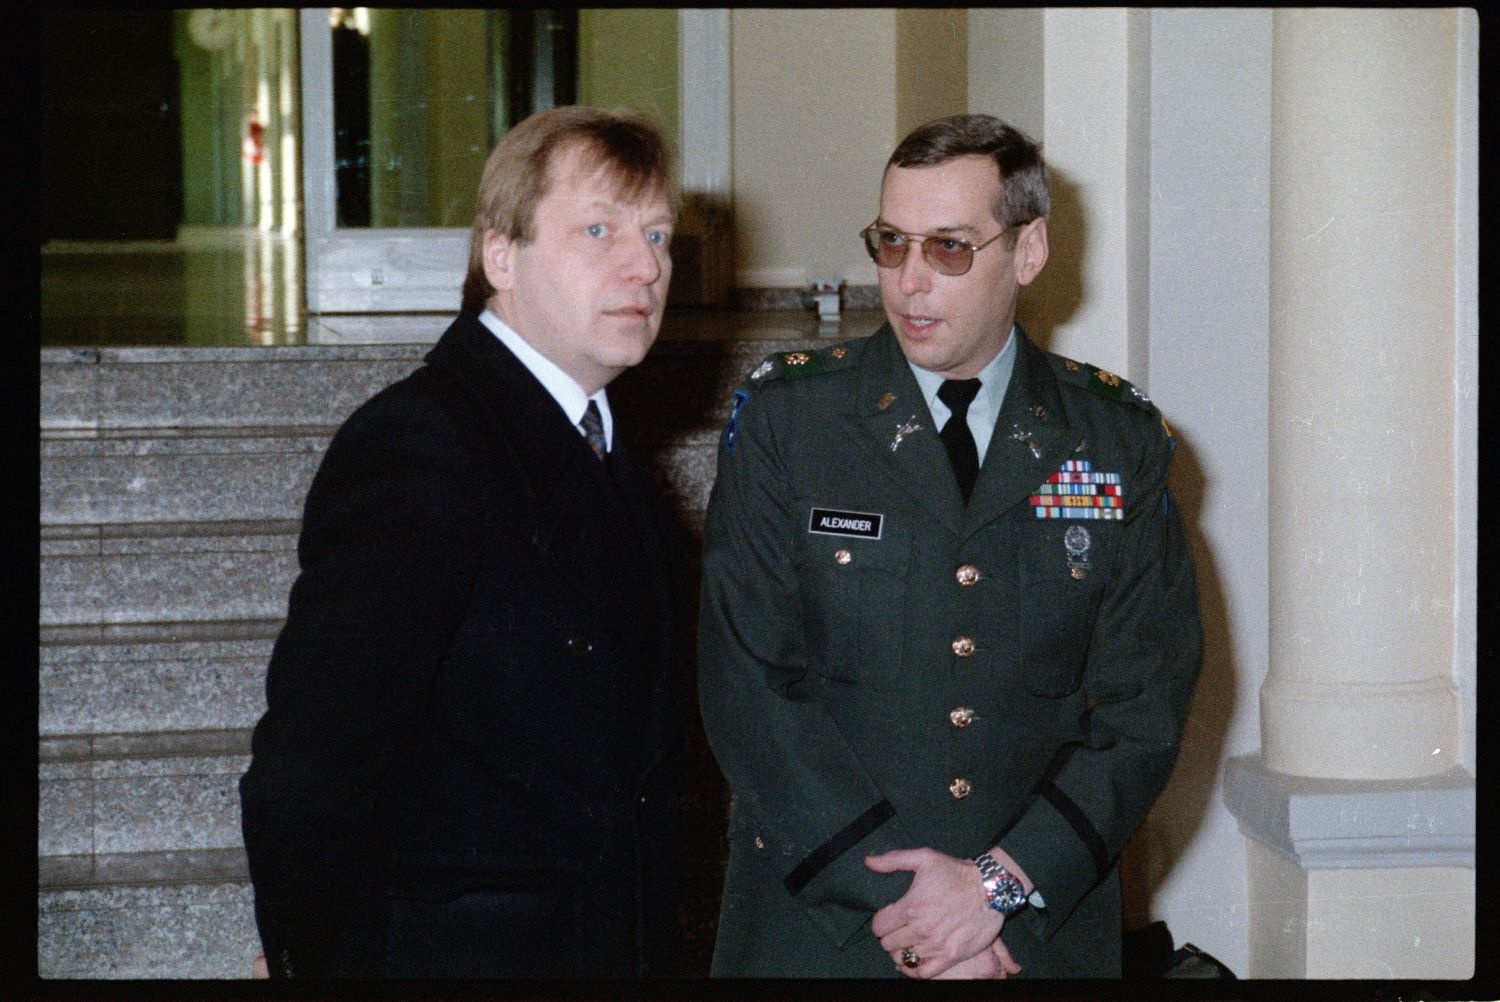 Fotografie: Besuch von Eberhard Diepgen, Regierender Bürgermeister von Berlin, in den McNair Barracks in Berlin-Lichterfelde (AlliiertenMuseum/U.S. Army Photograph Public Domain Mark)